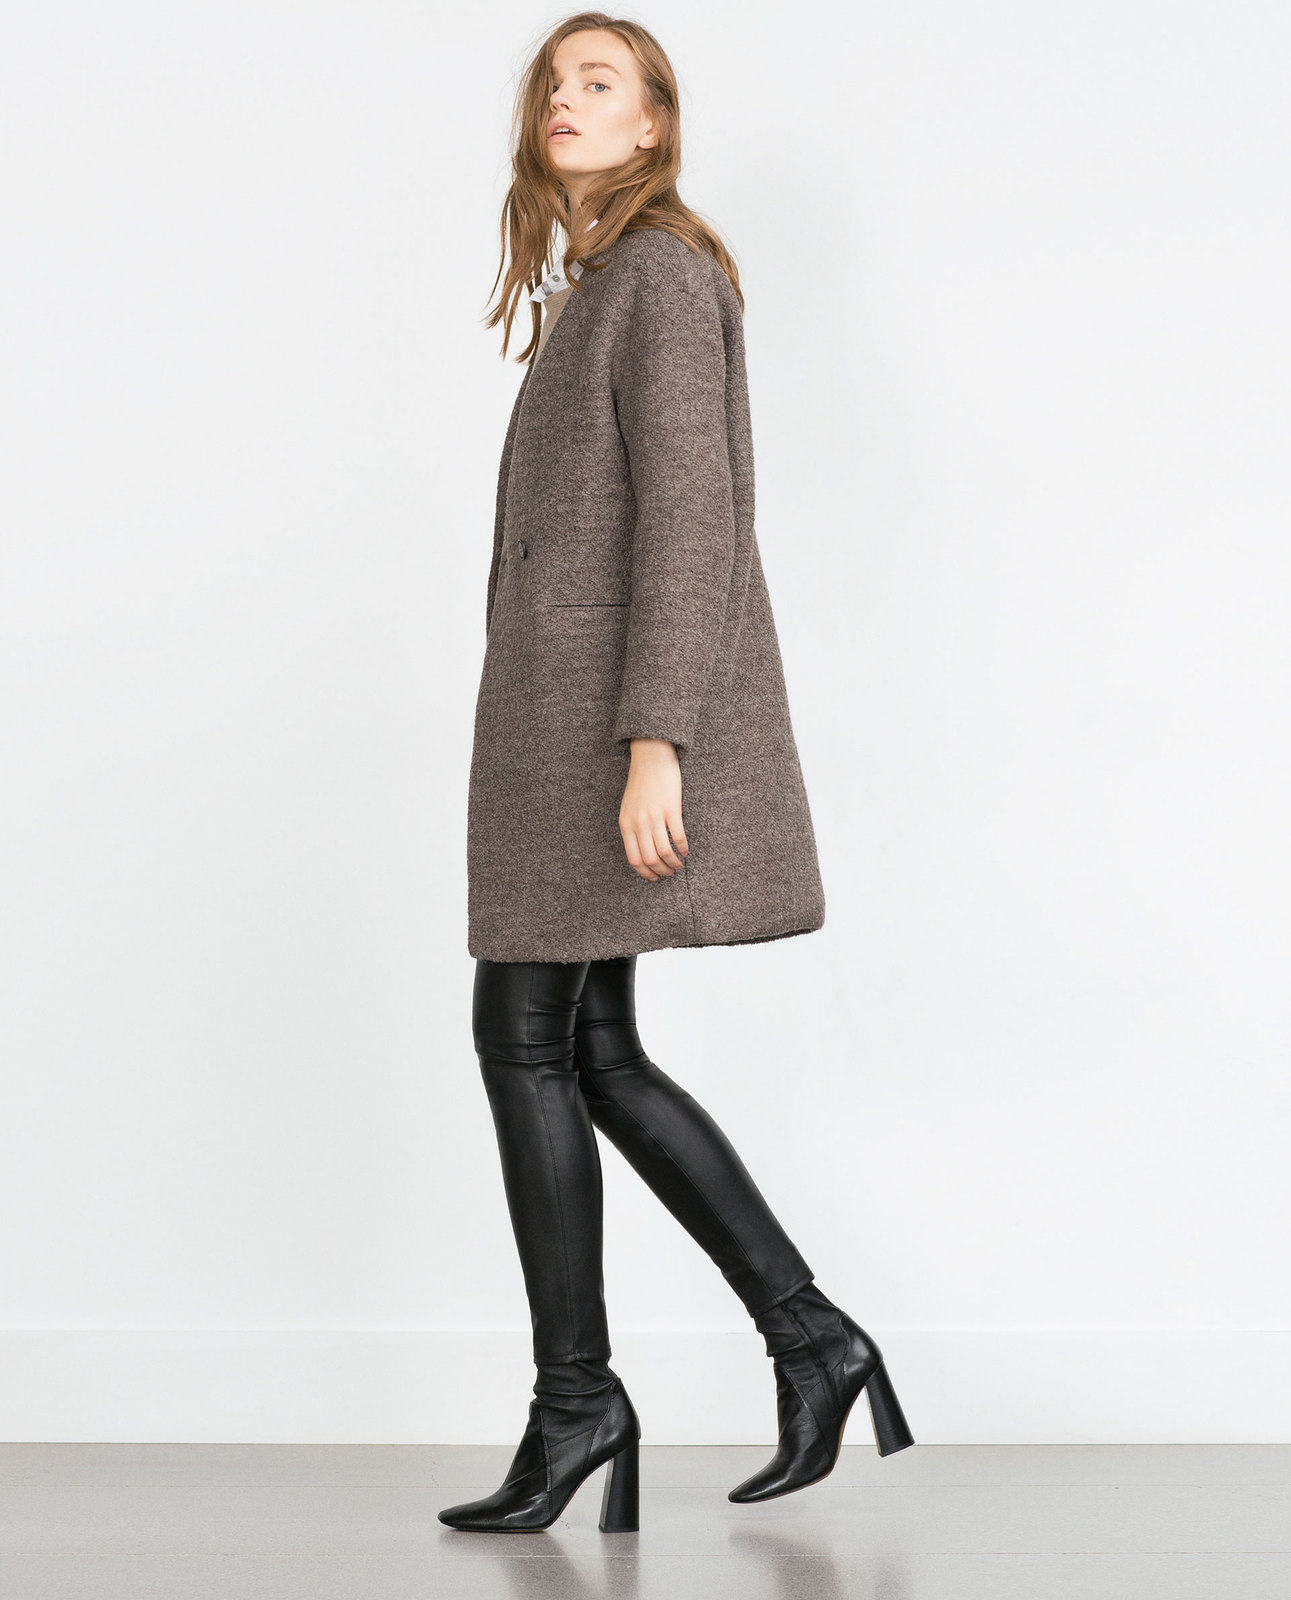 Zara női buklé gyapjú kabát 2015.10.15 fotója